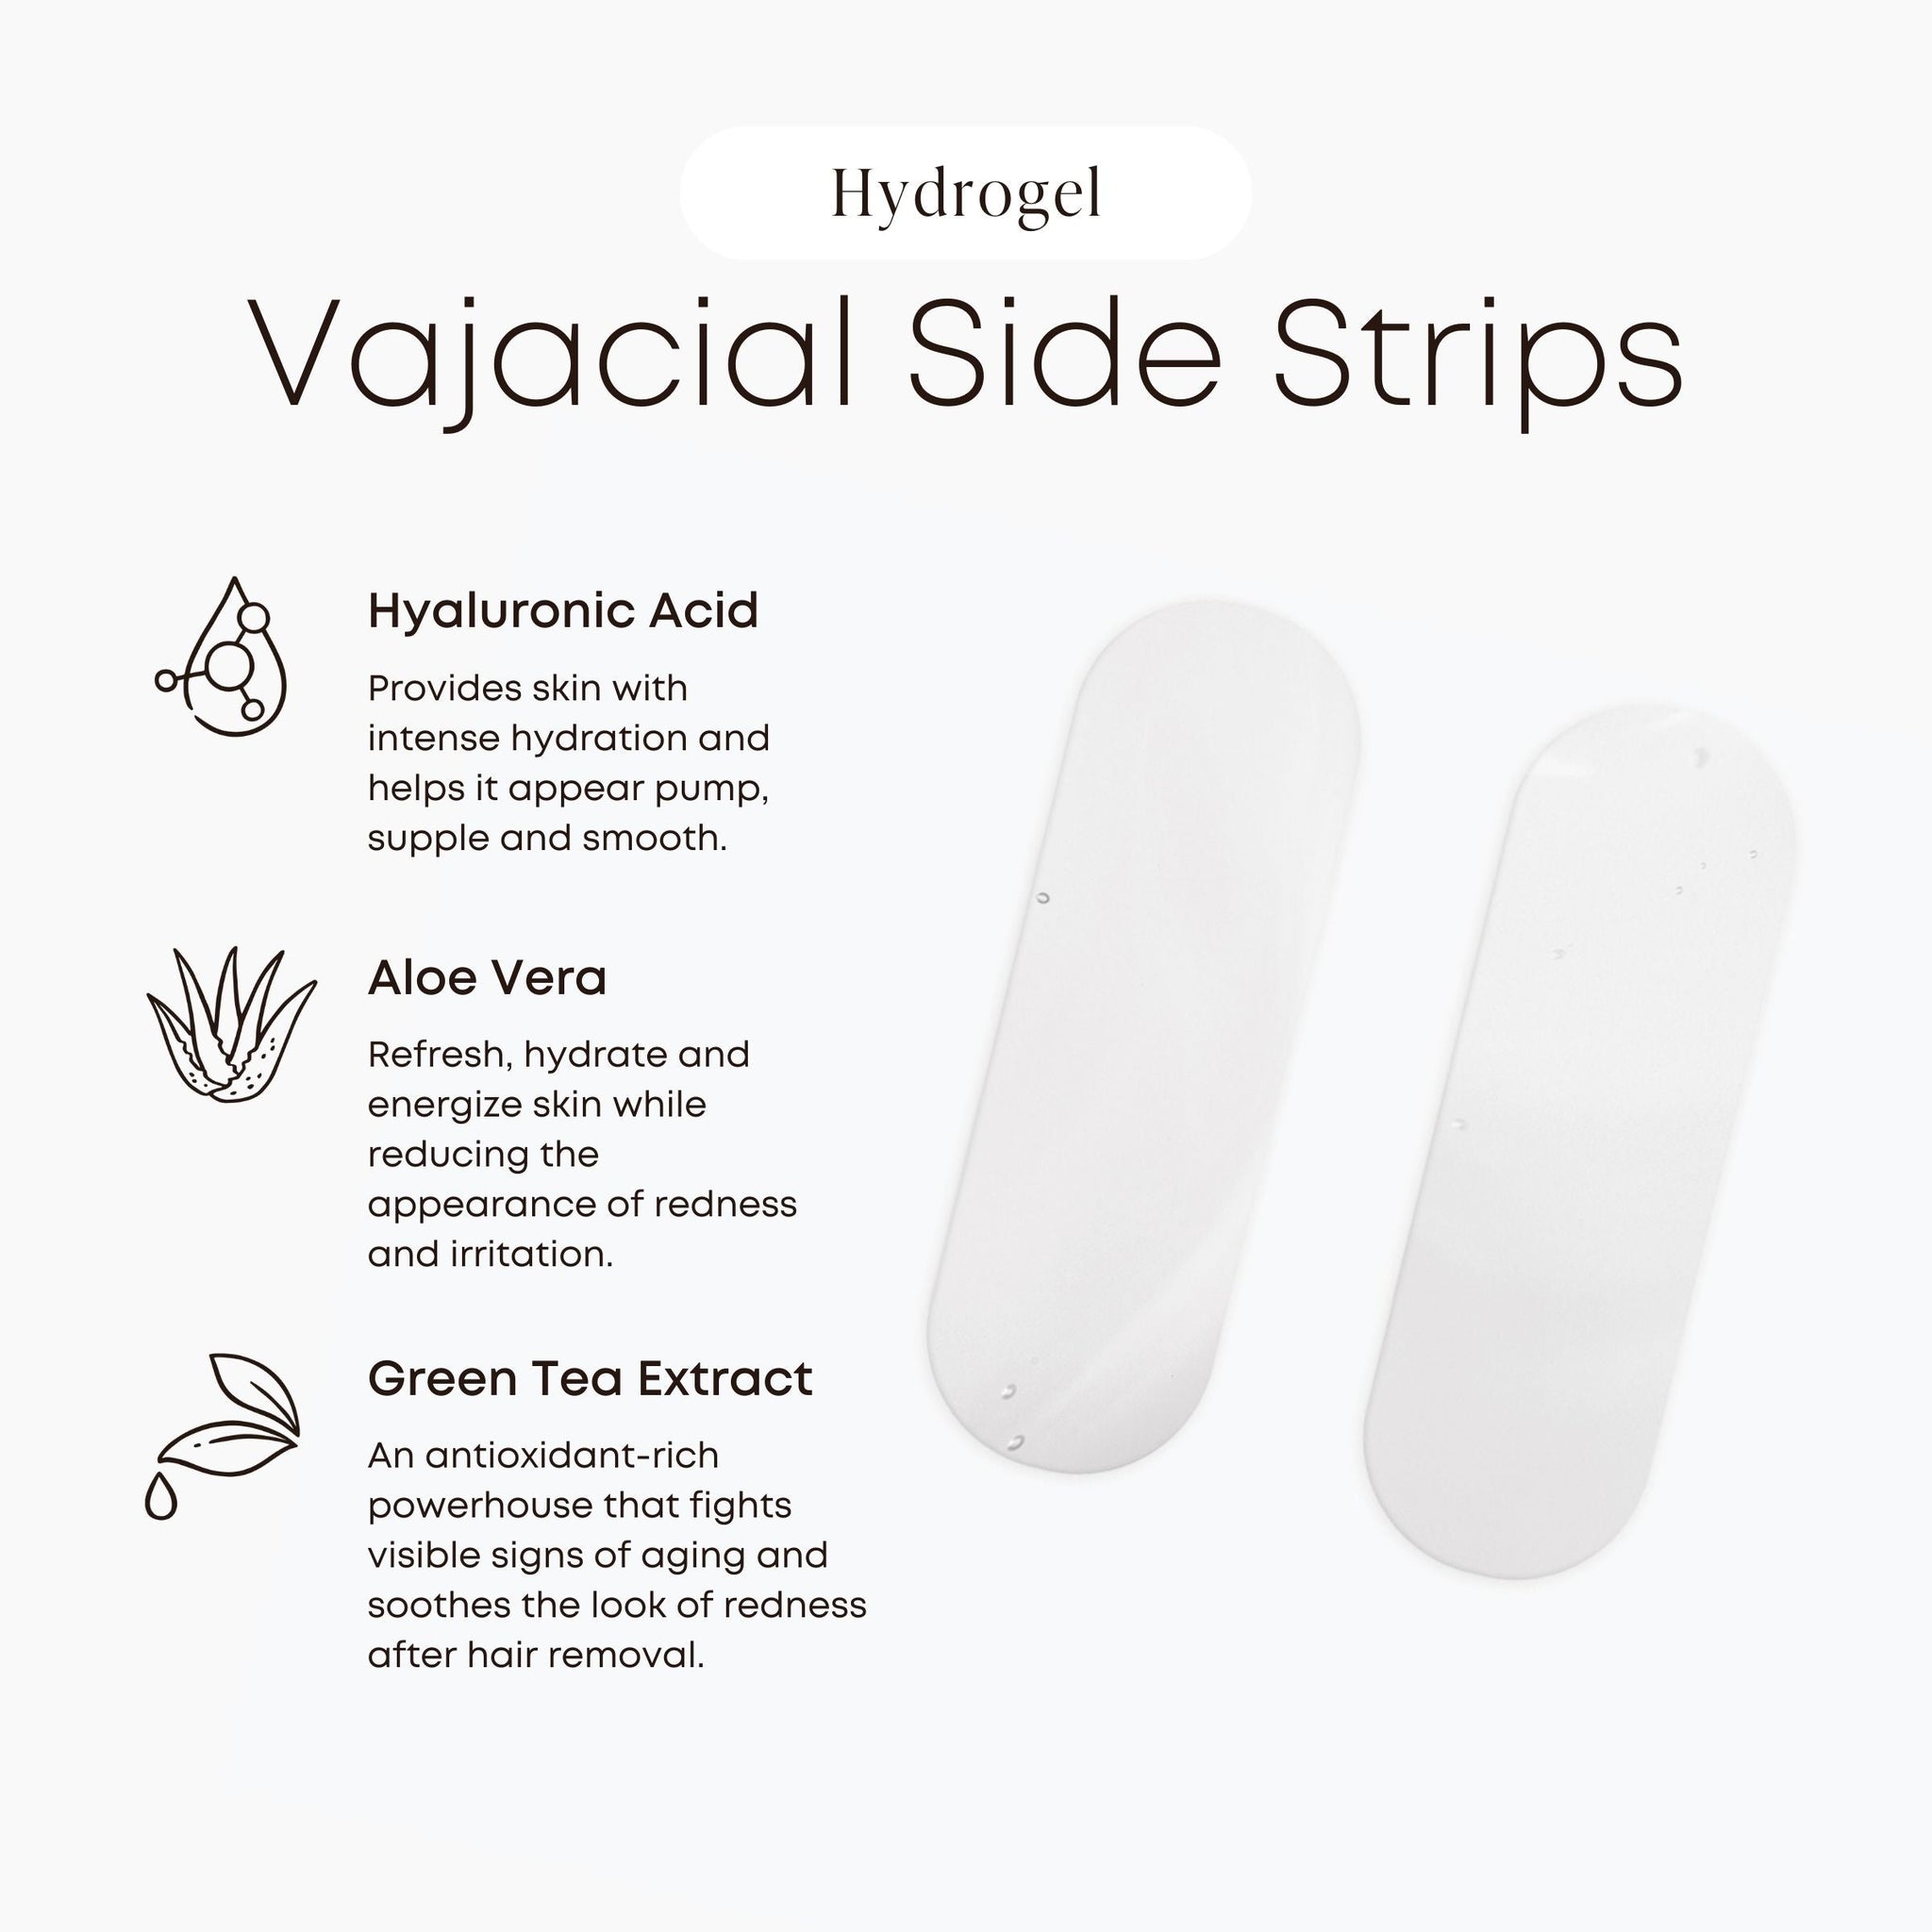 Hydrogel Vajacial Side Strips